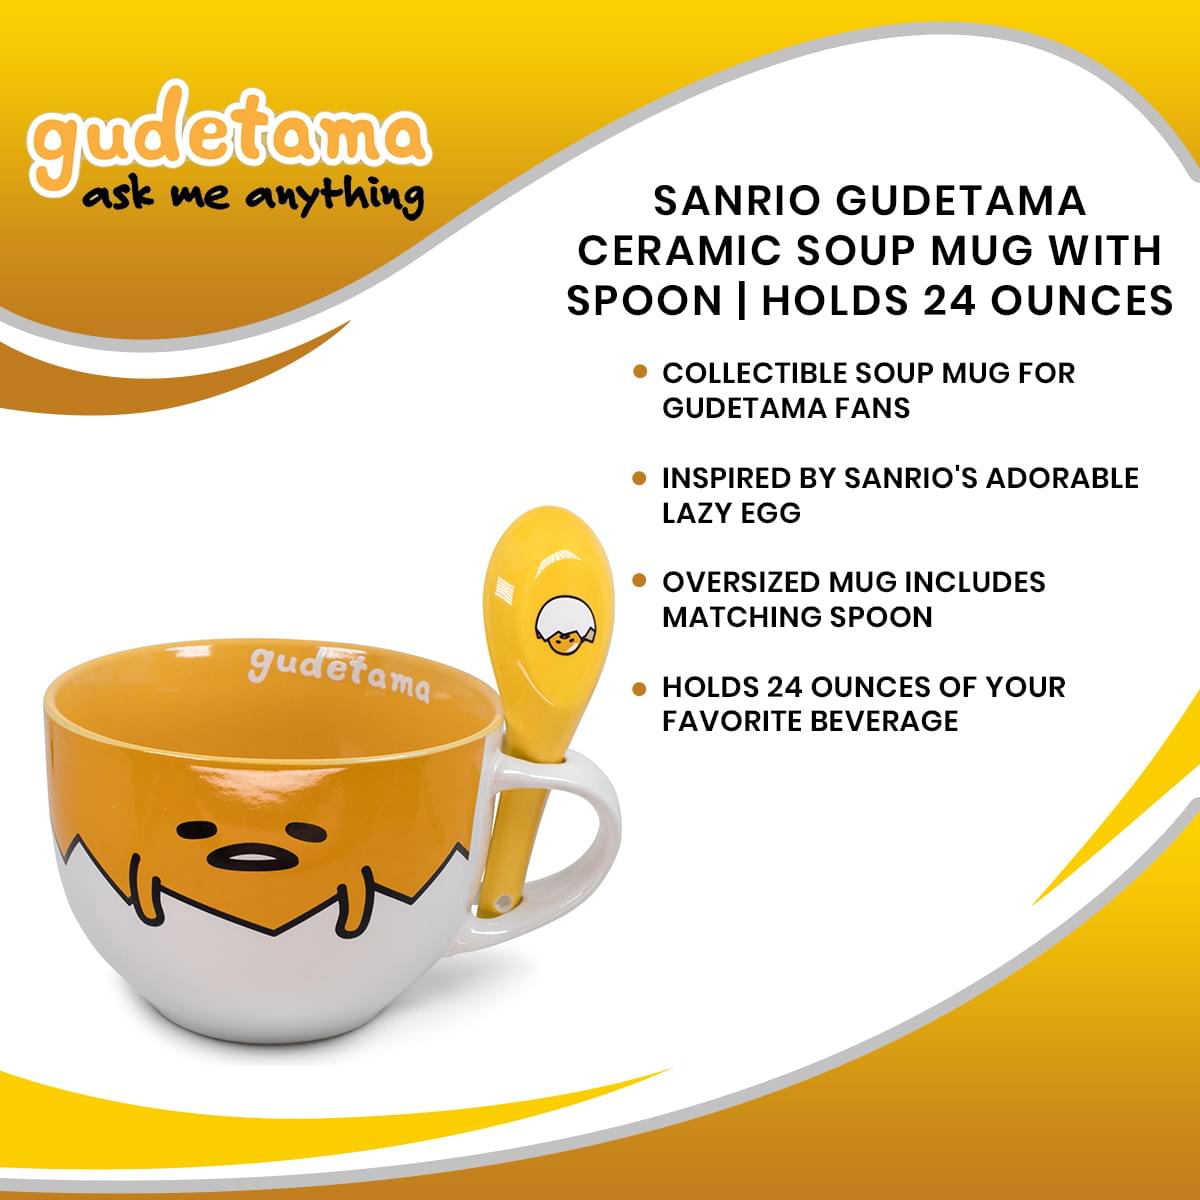 Sanrio Gudetama Ceramic Soup Mug With Spoon | Holds 24 Ounces